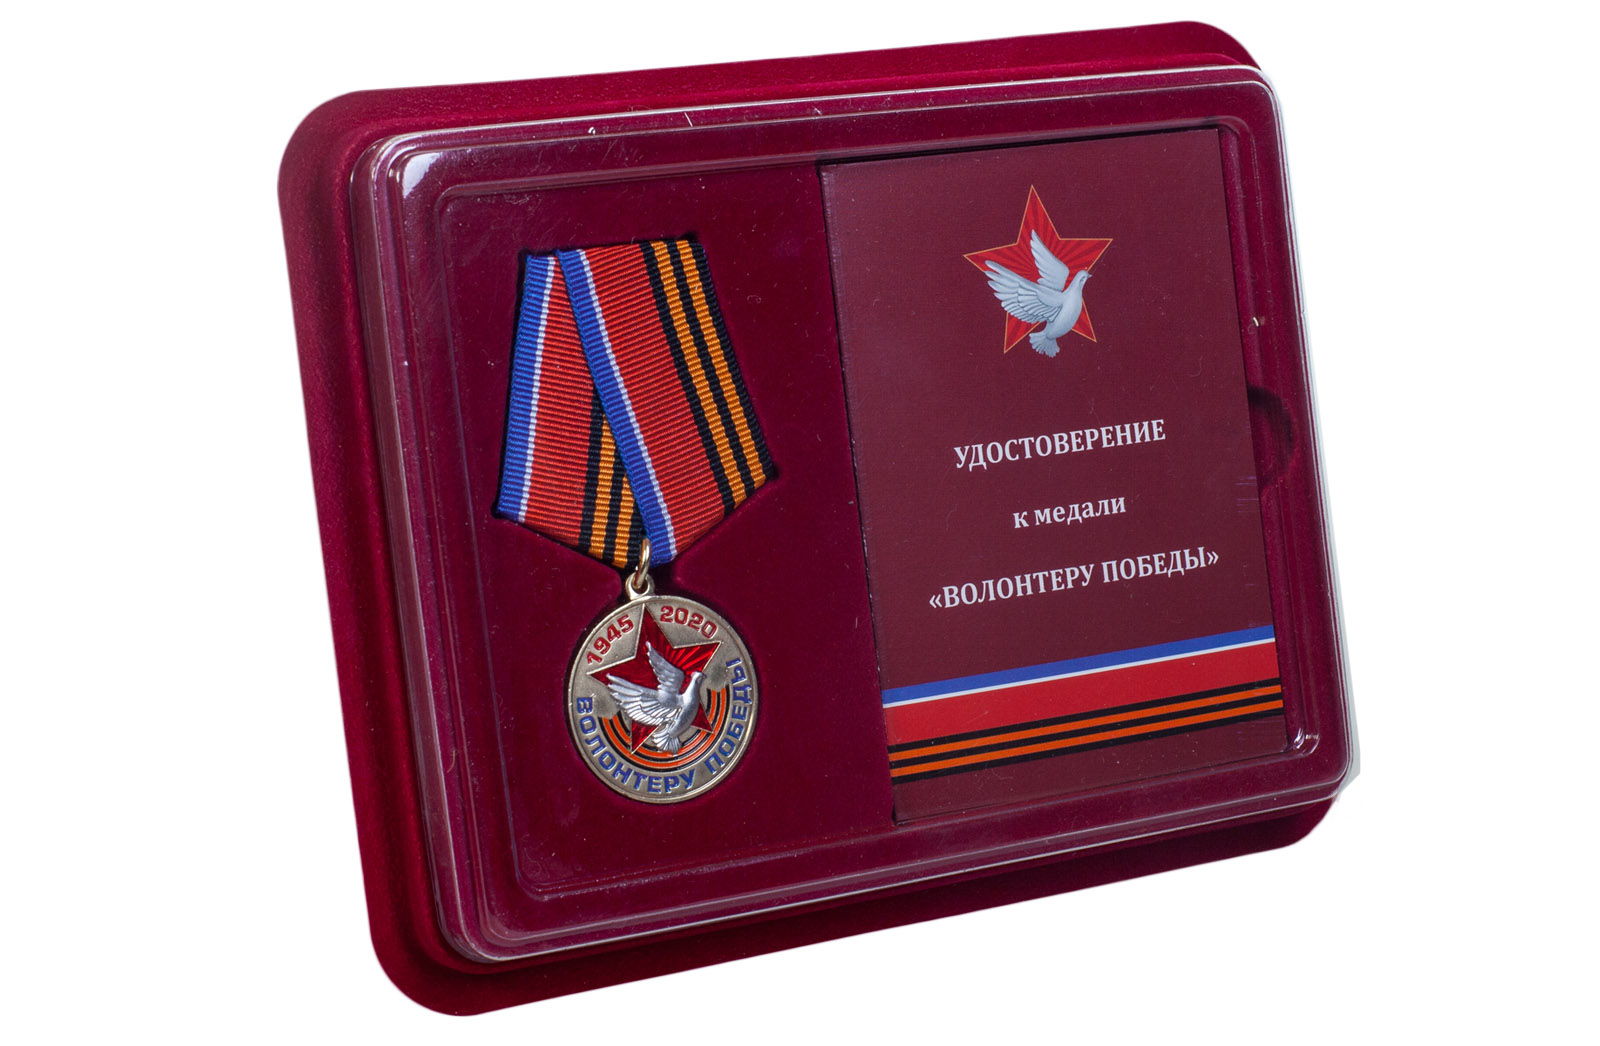 Купить латунную медаль Волонтеру Победы в футляре в подарок